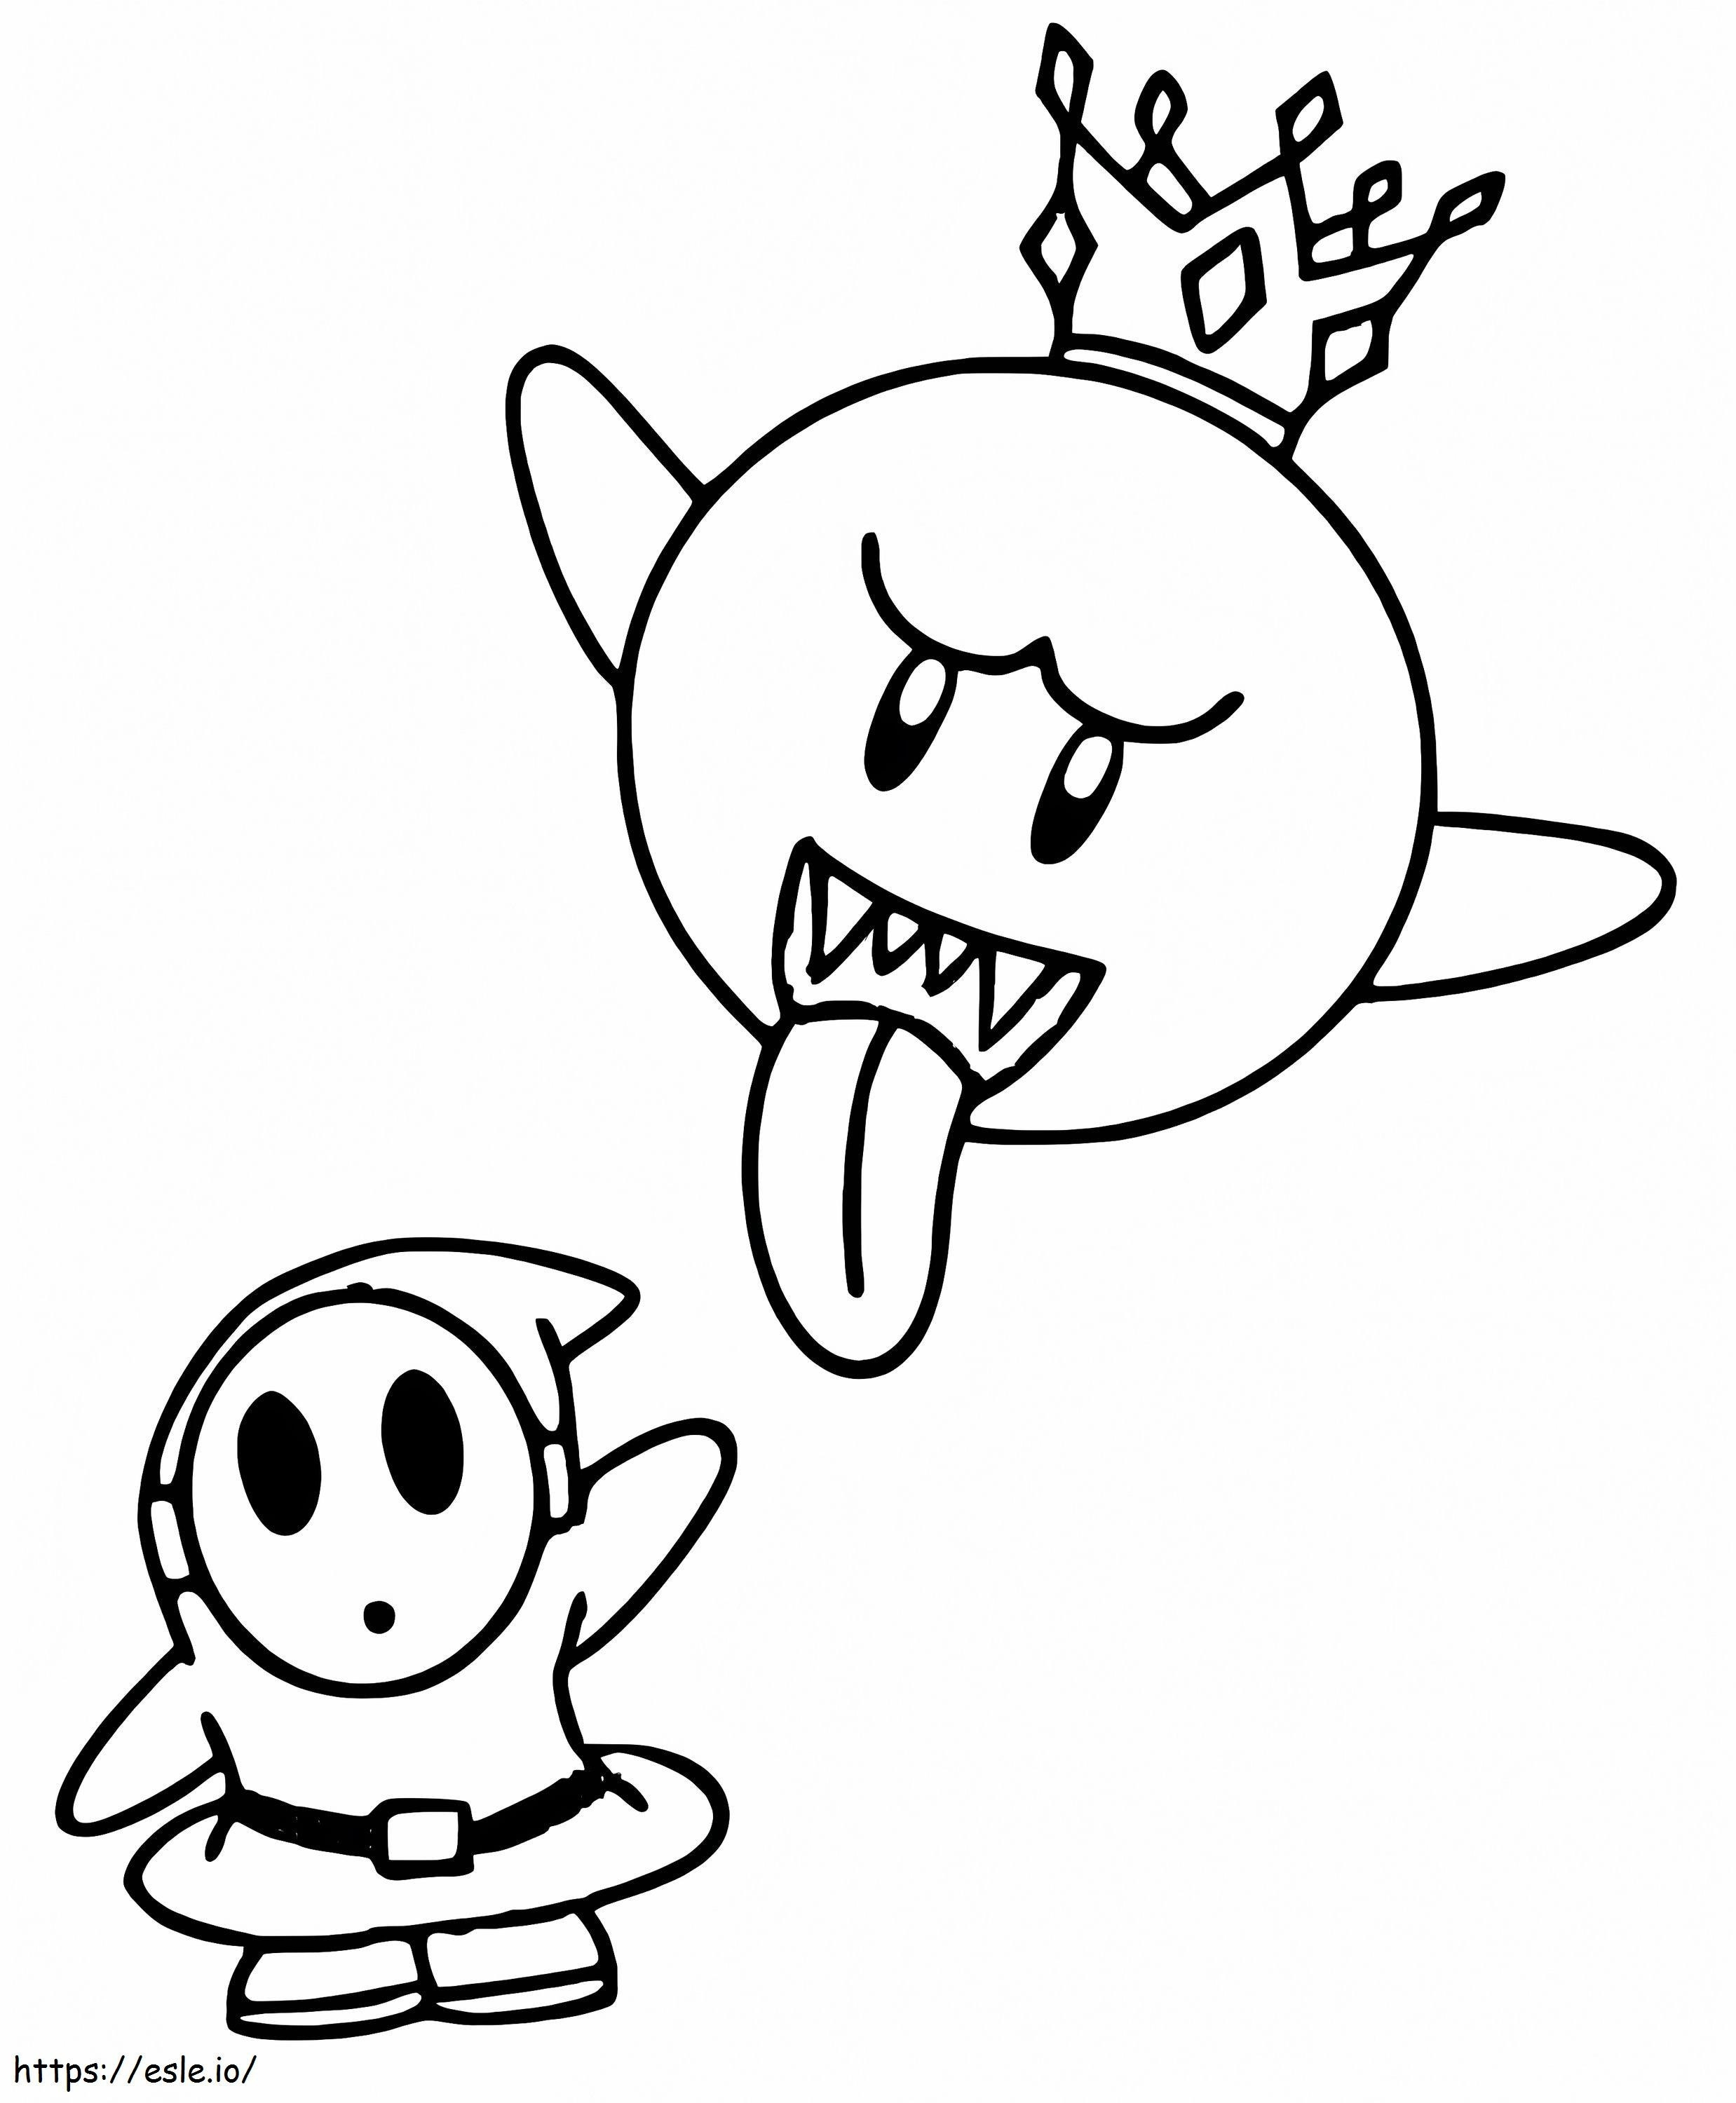 Rei Boo e cara tímido Mario para colorir